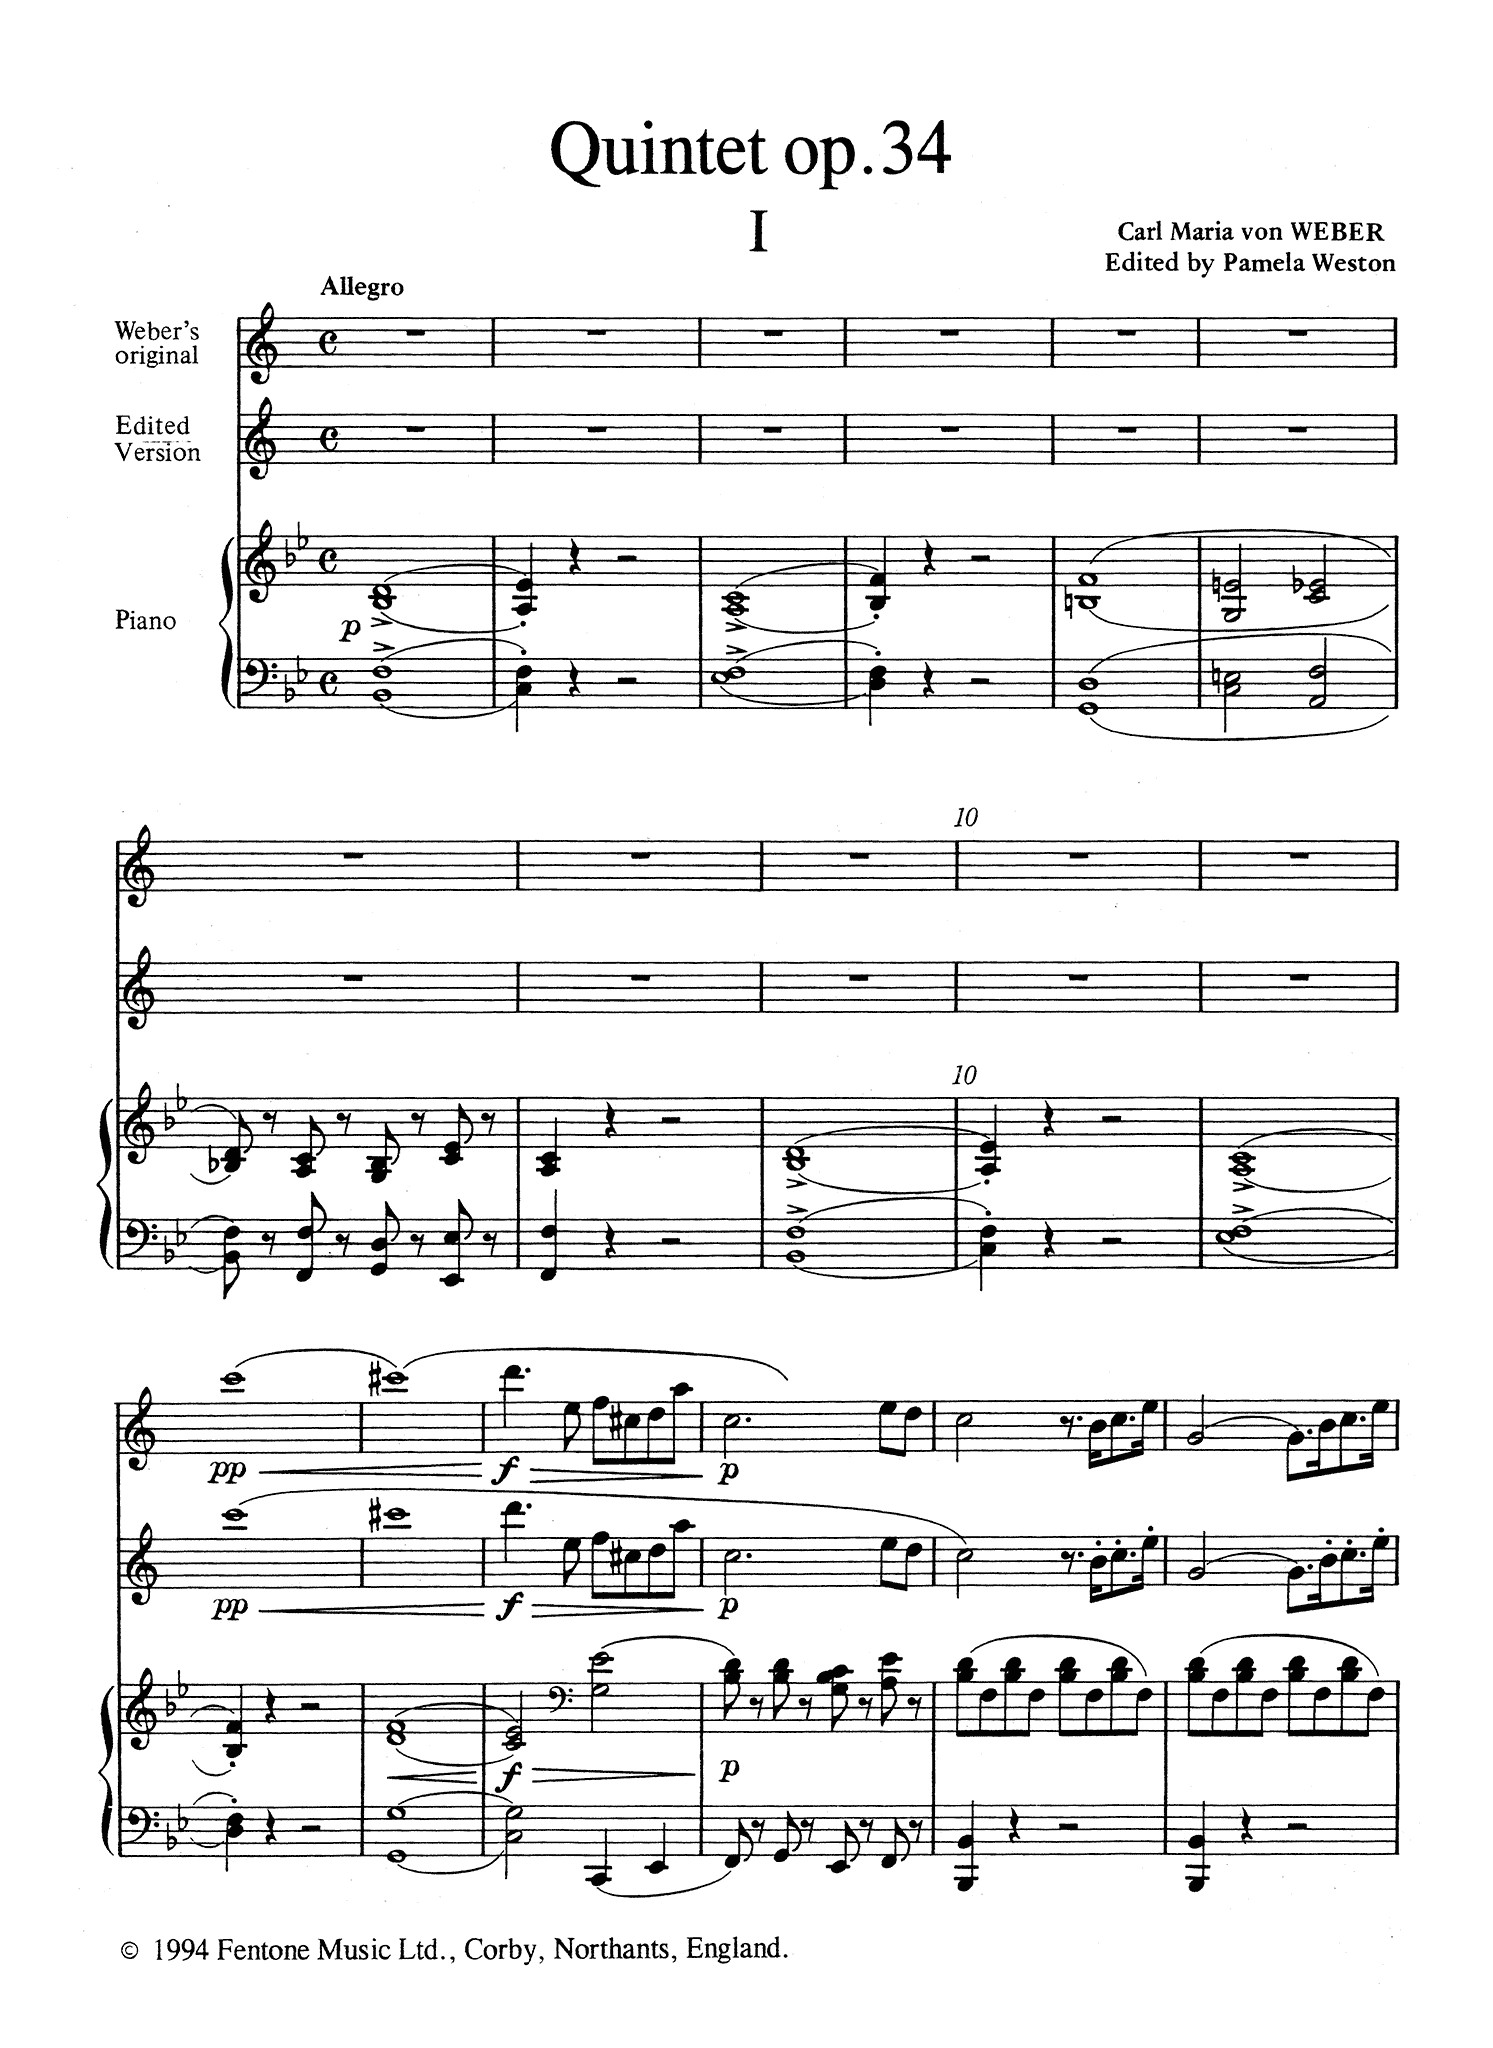 Weber Clarinet Quintet Op. 34 - Movement 1